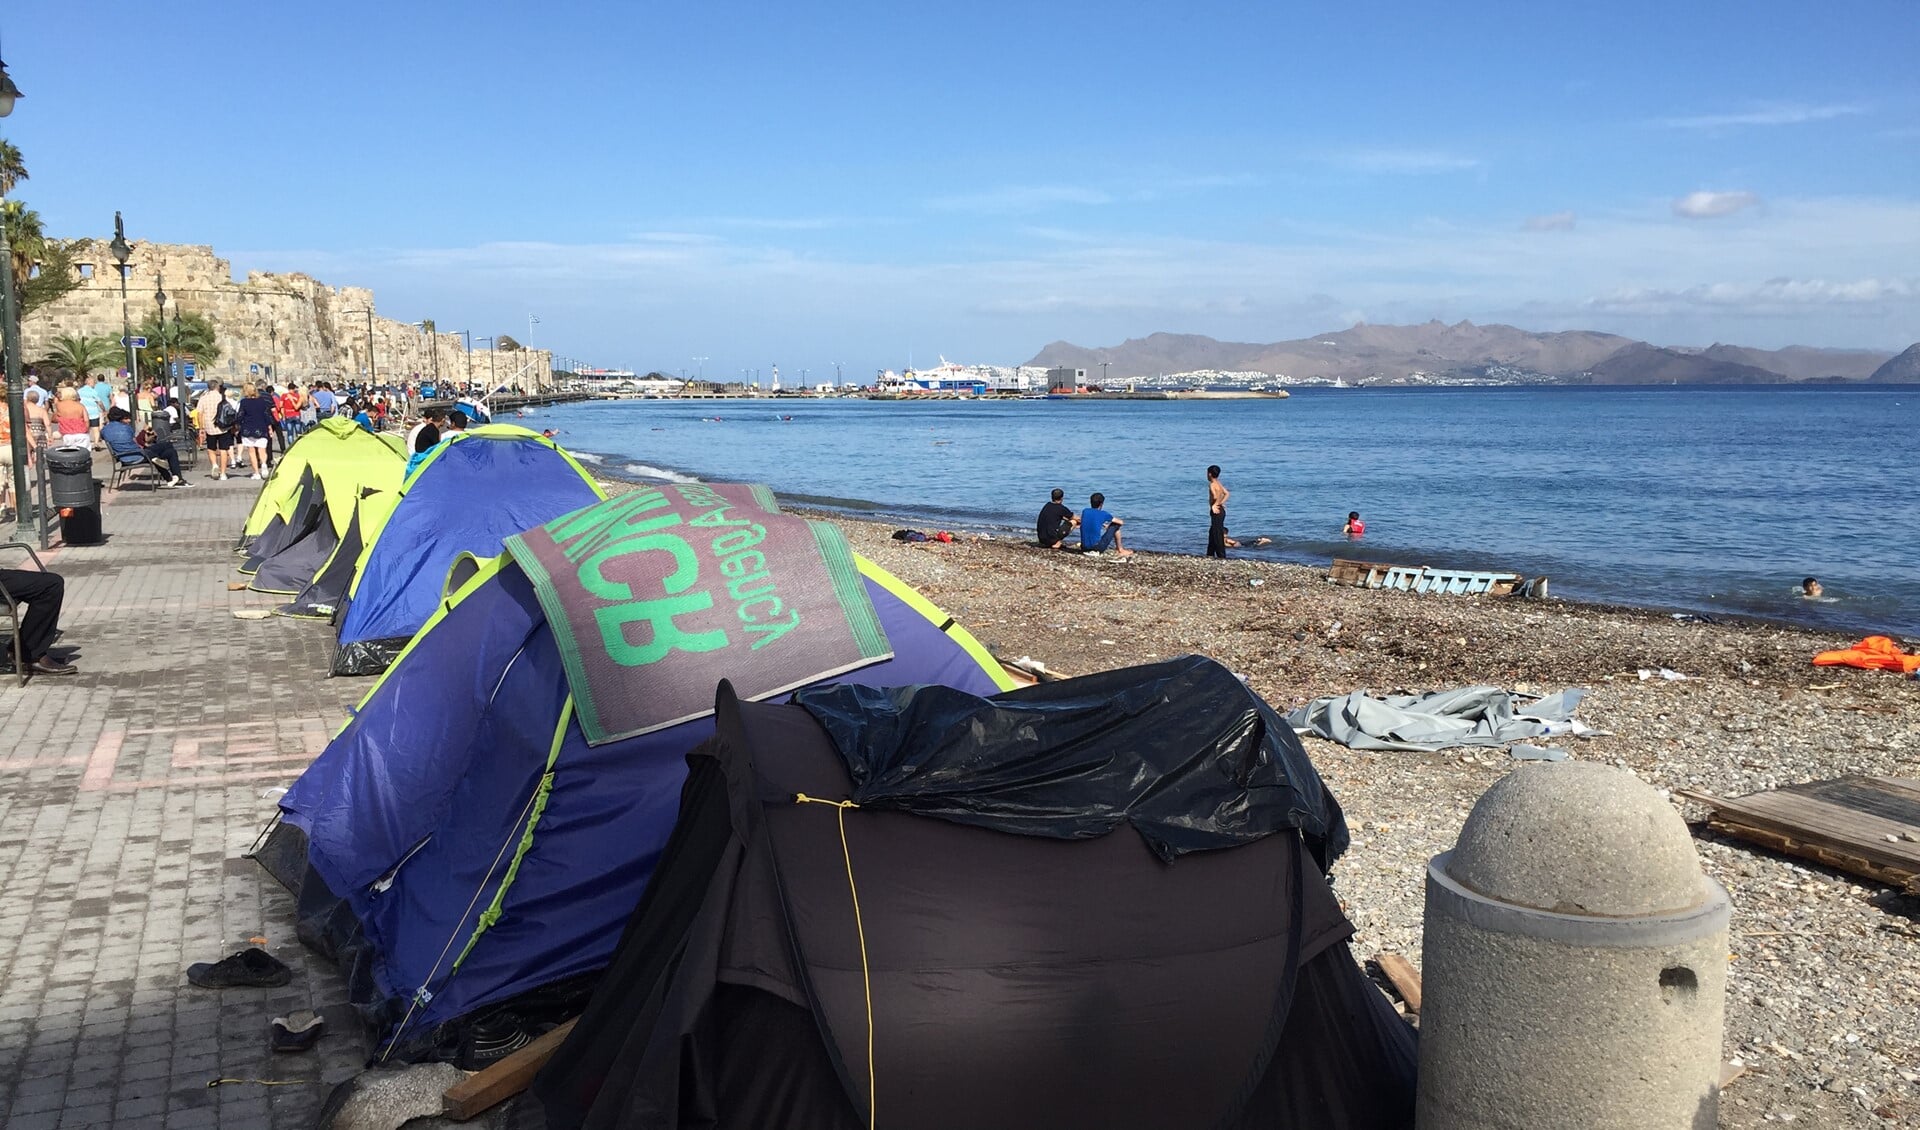 Dagelijks komen nieuwe vluchtelingen aan in Europa, zoals hier op het Griekse eiland Kos. Foto: Martijn Mastenbroek (c)